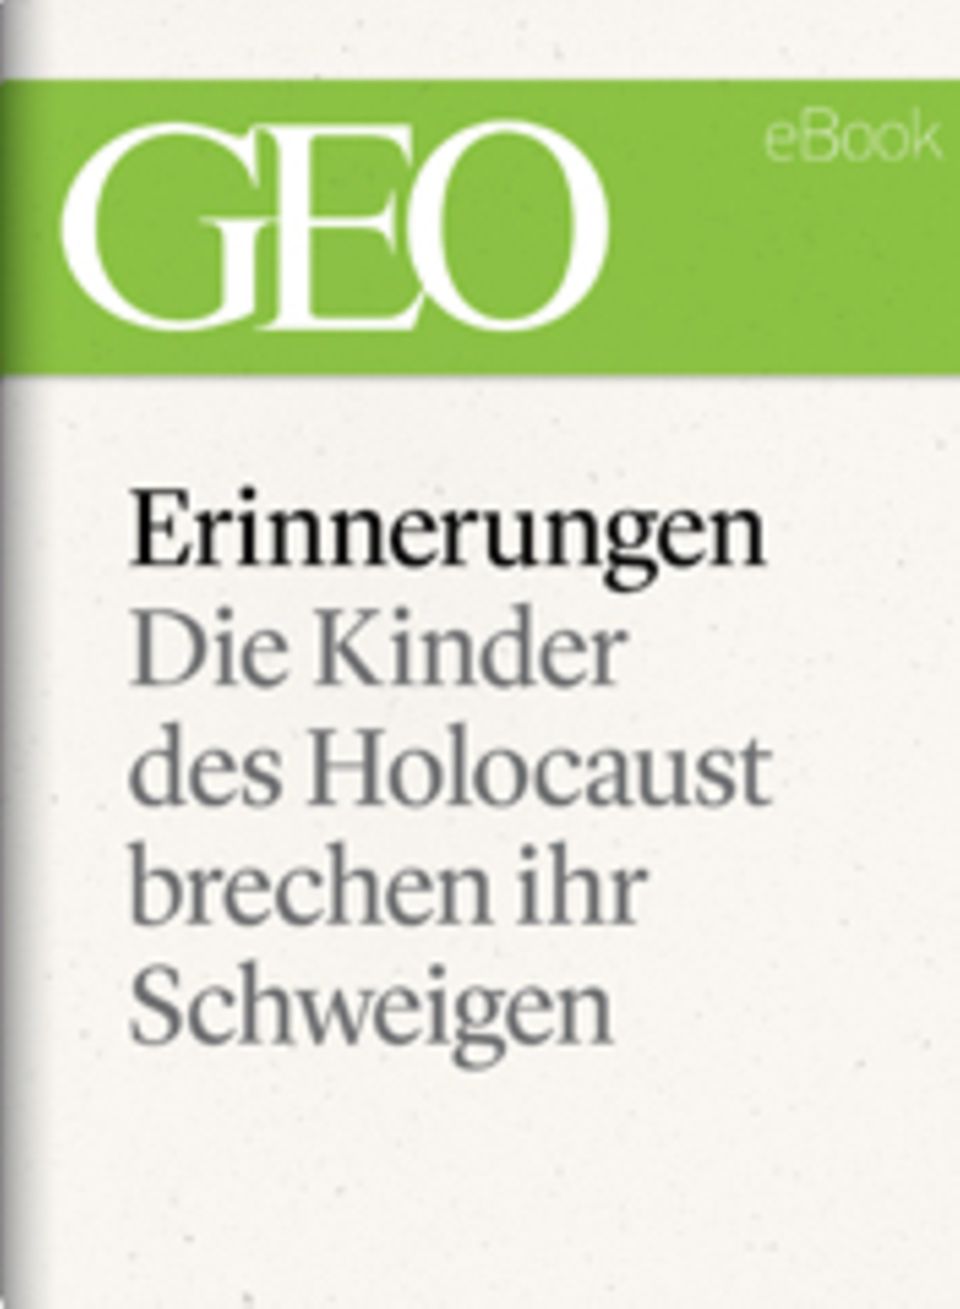 Die Kinder des Holocaust brechen ihr Schweigen: GEO eBook "Holocaust"